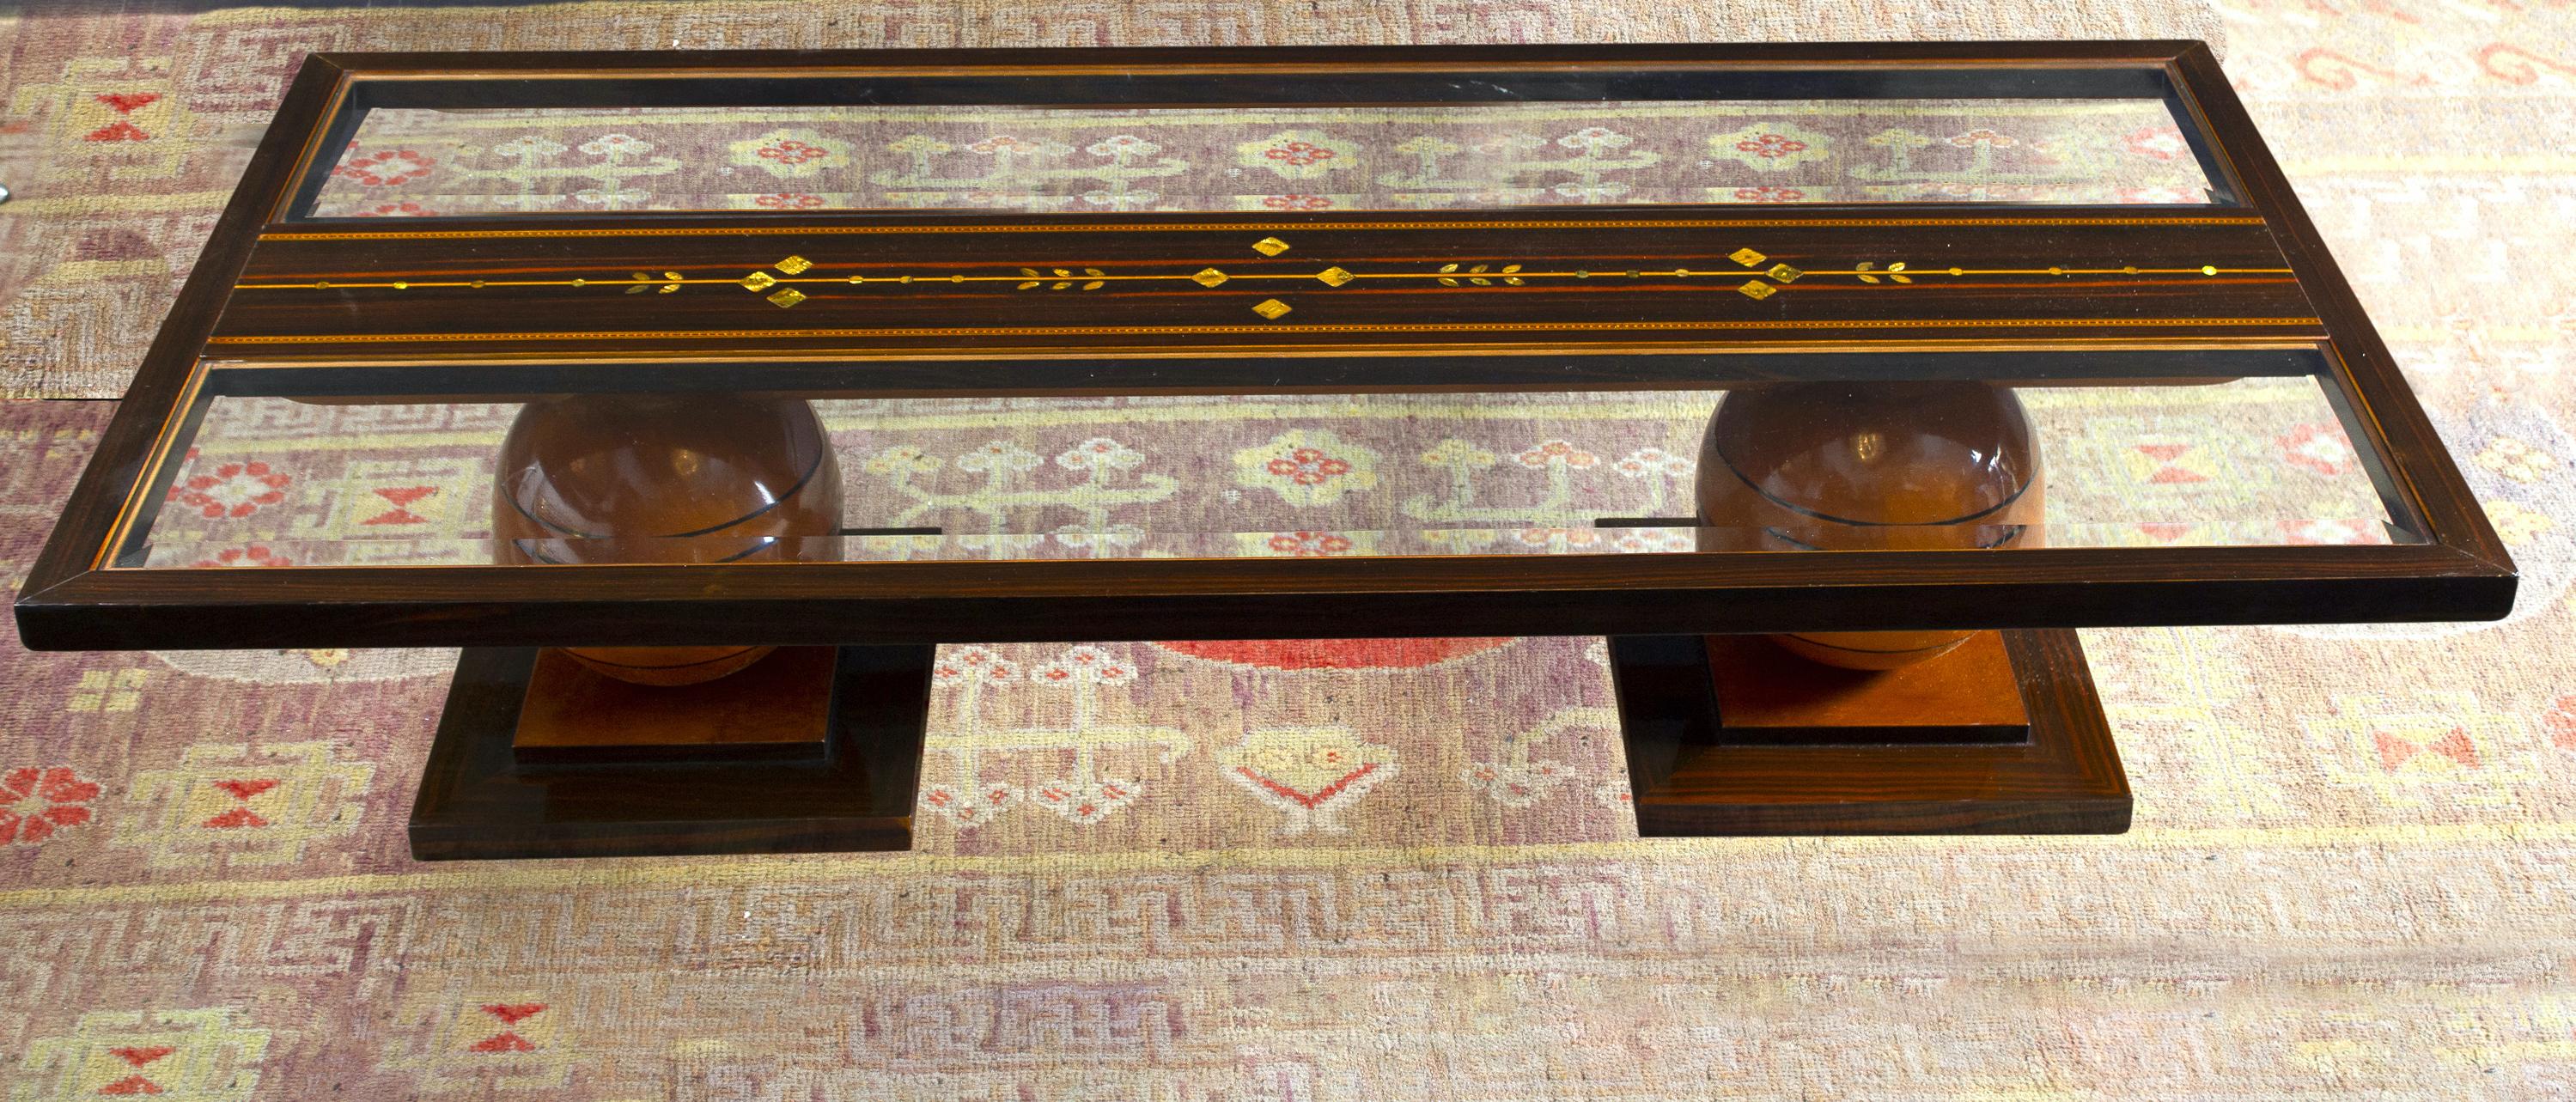 Elegante table basse Art Deco en différentes essences de bois, ornée d'inserts précieux en nacre .
La base porte la signature de C.I.C. 
 Excellent état vintage.
 